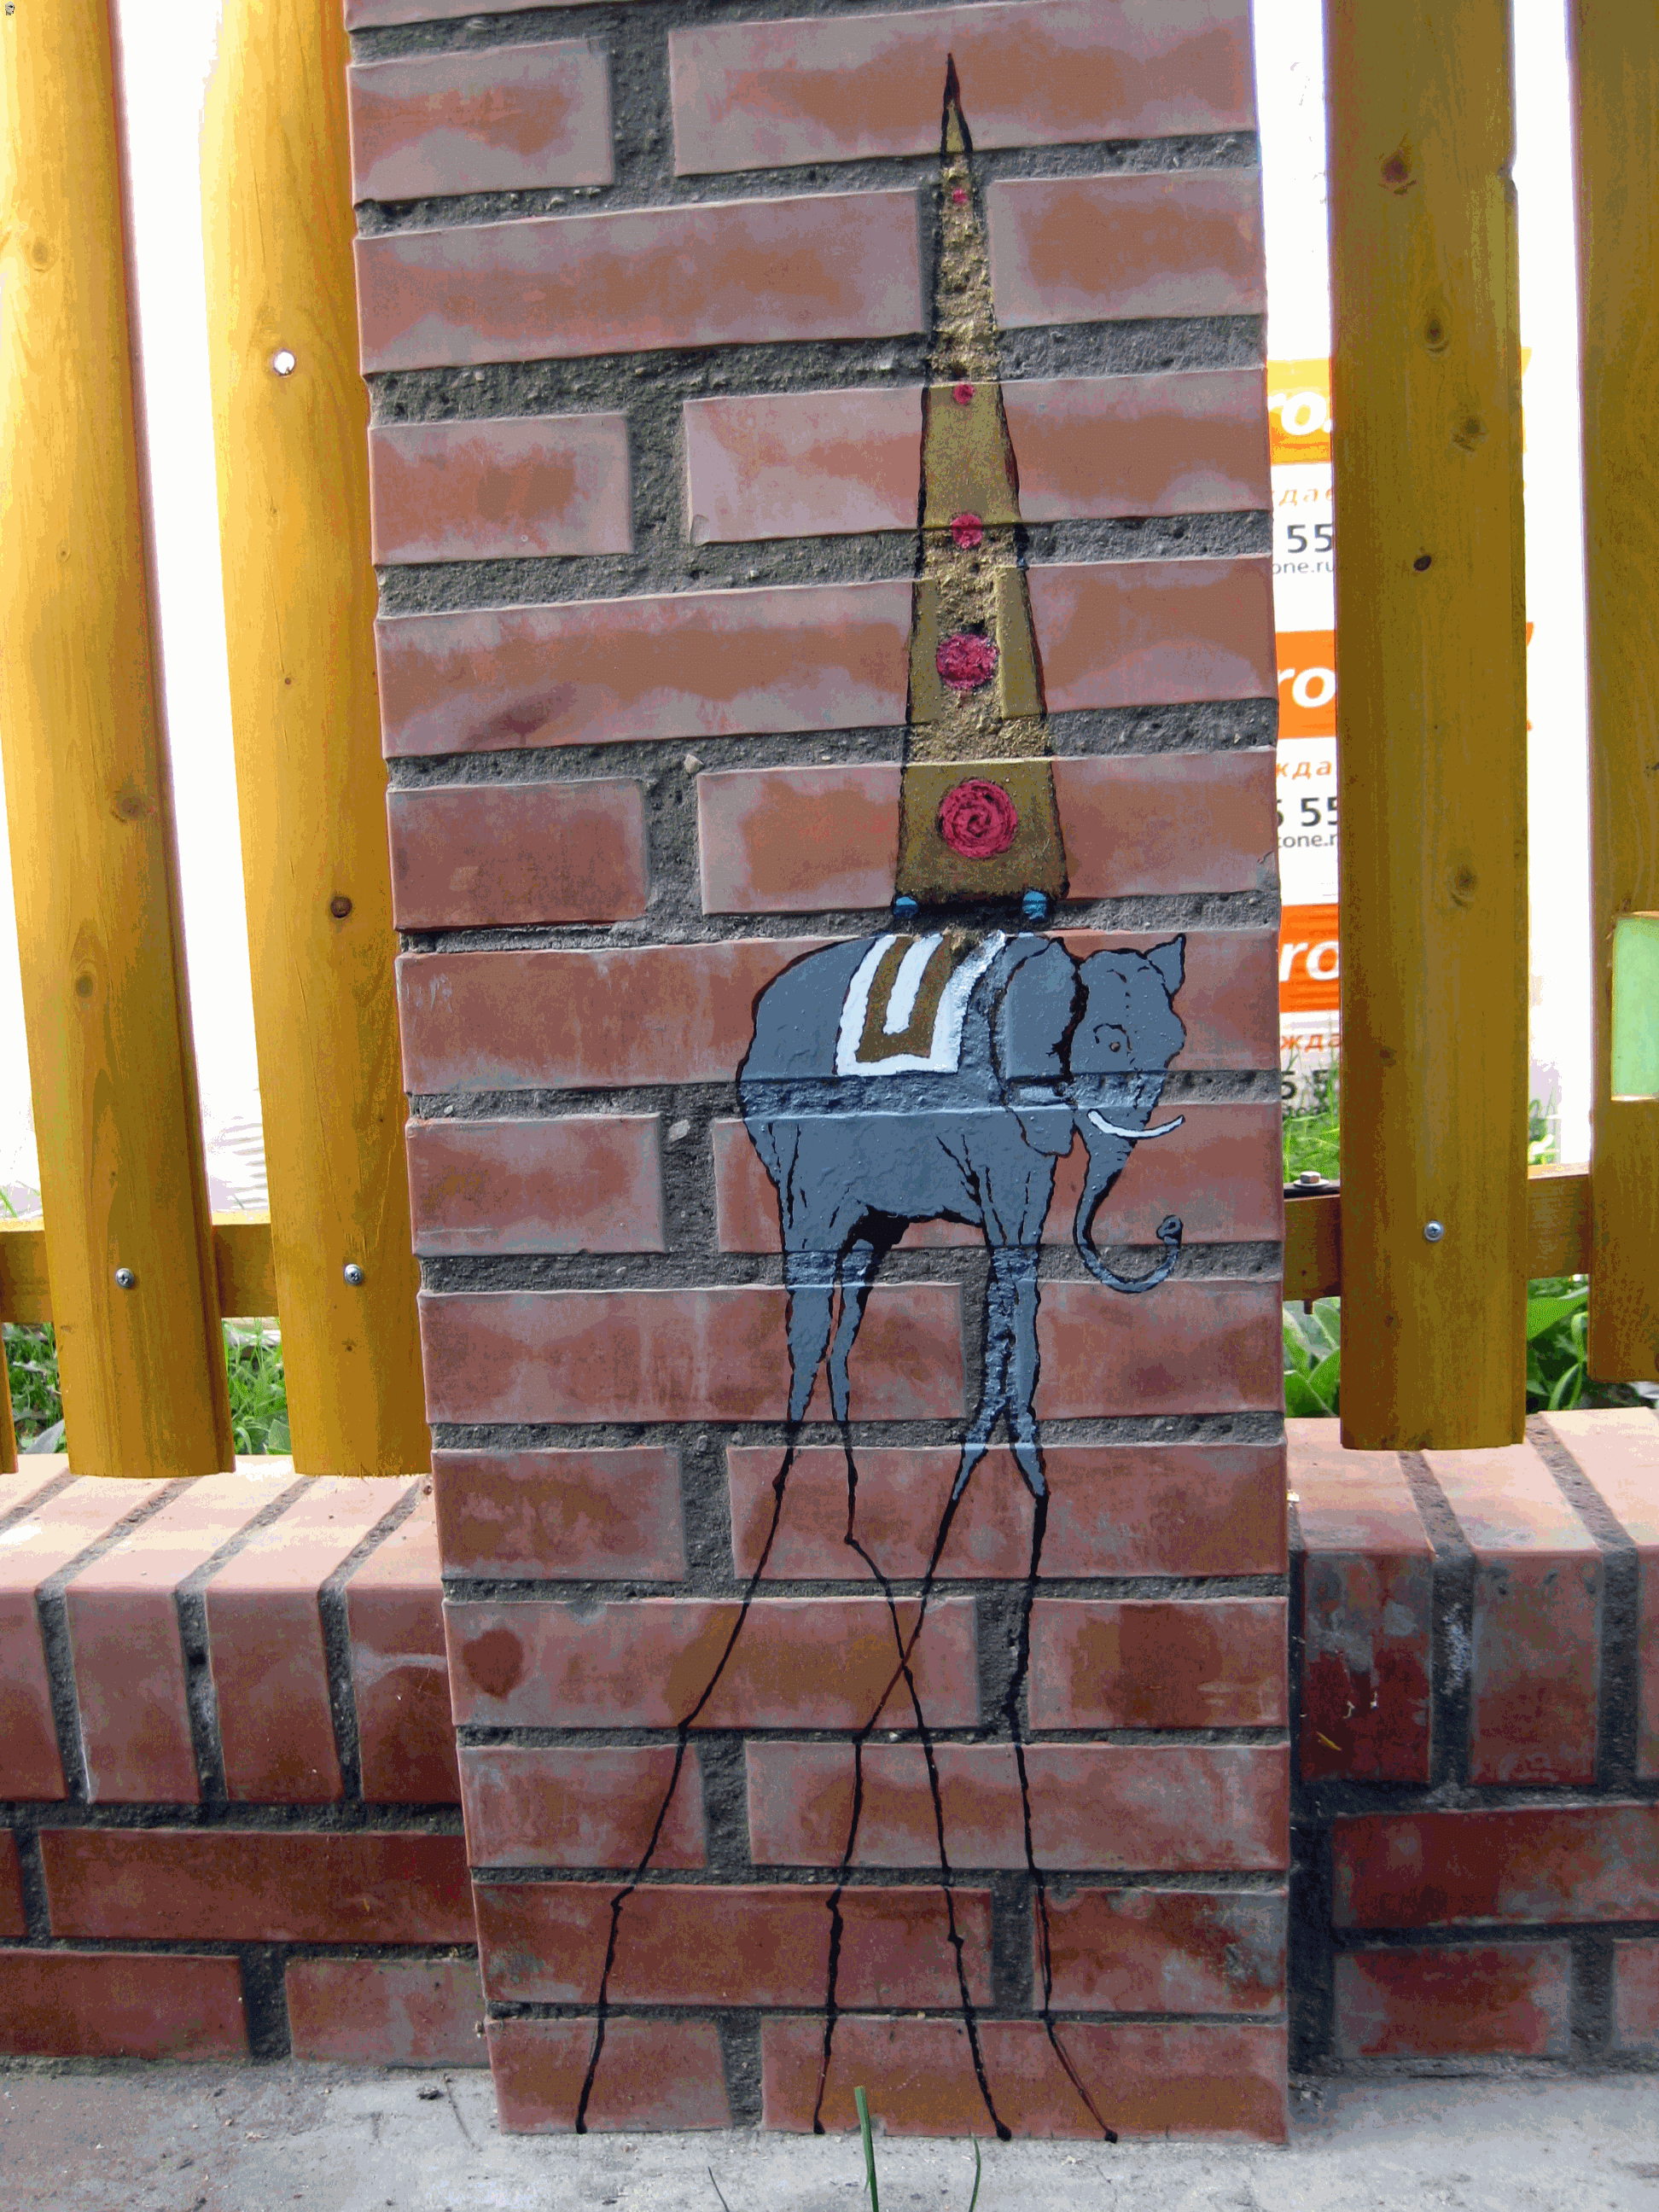 кирпичный забор Сальвадора Дали, инкрустация цветным стеклом, рисунок на кирпиче